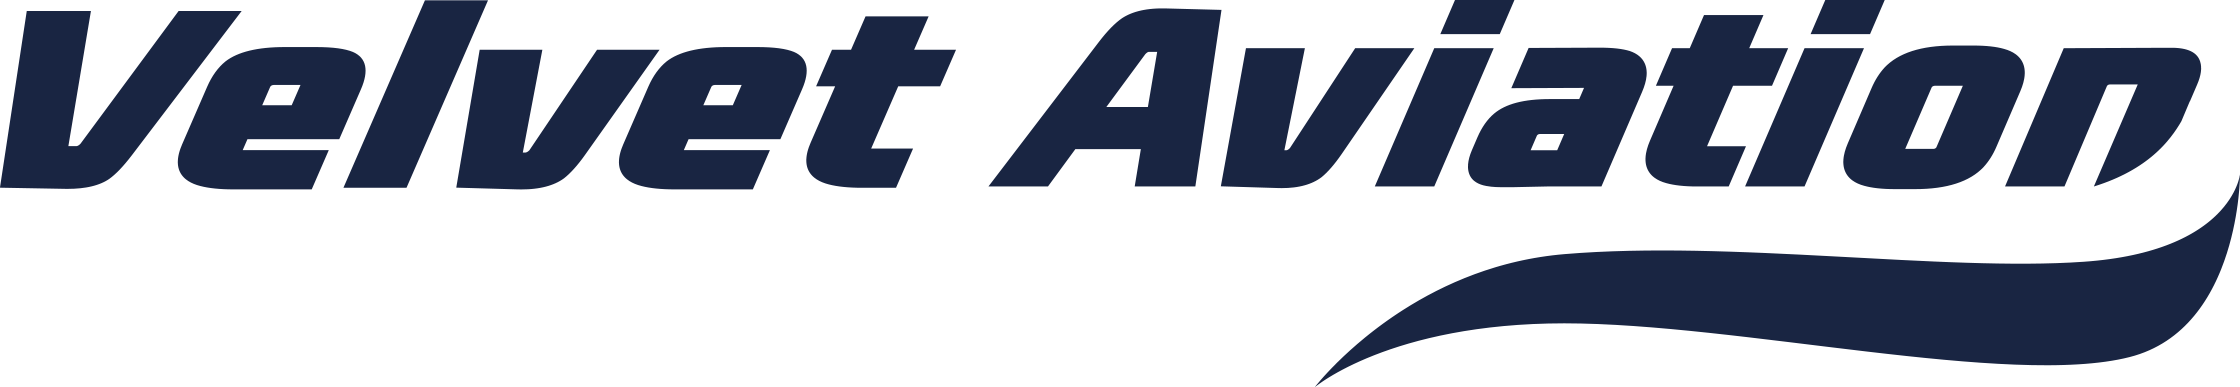 Velvet Aviation Services GmbH Logo